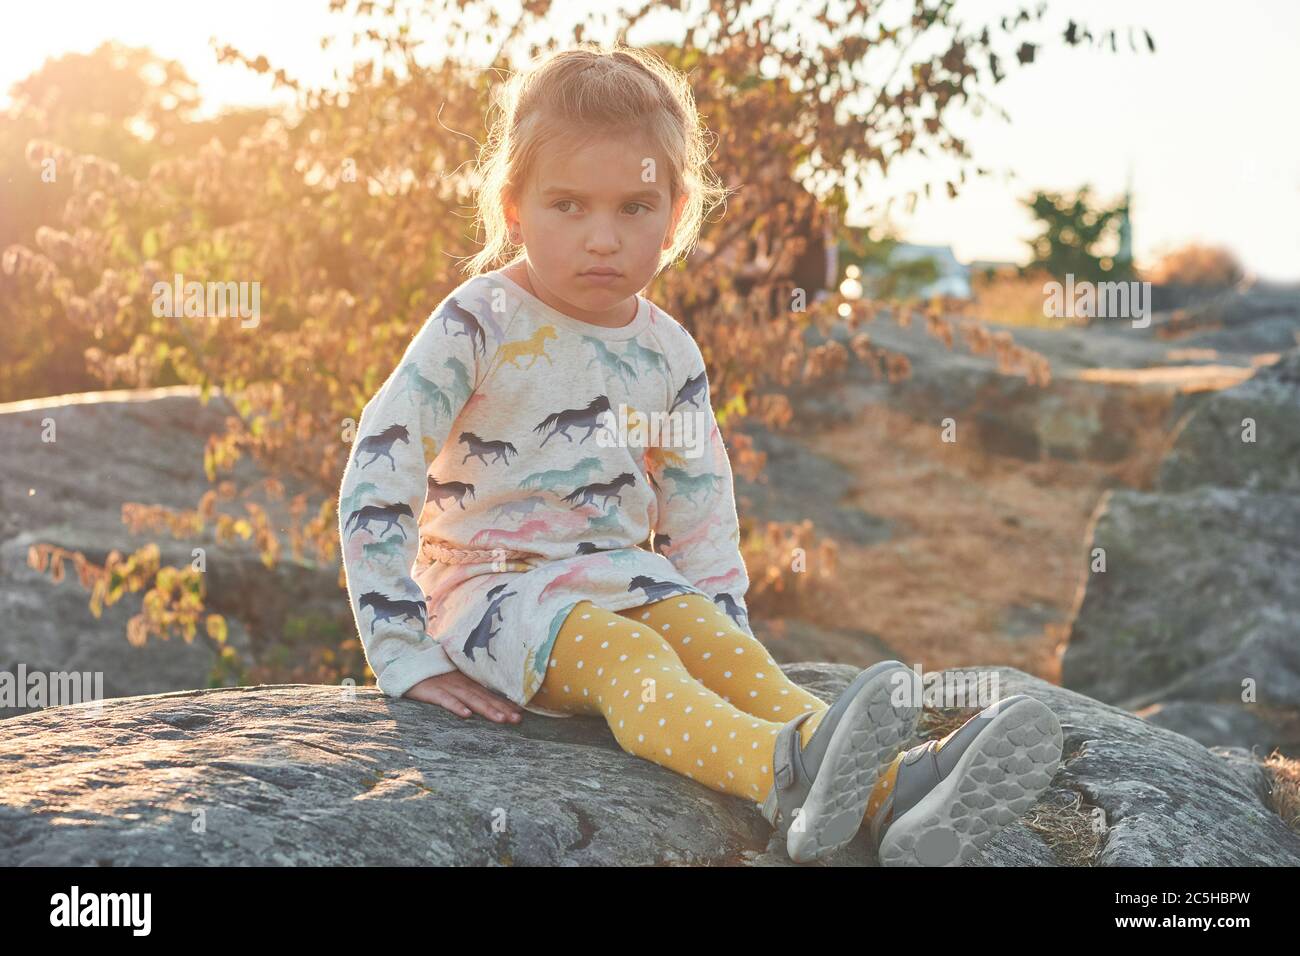 Sad girl sitting on stones, sunset on background Stock Photo